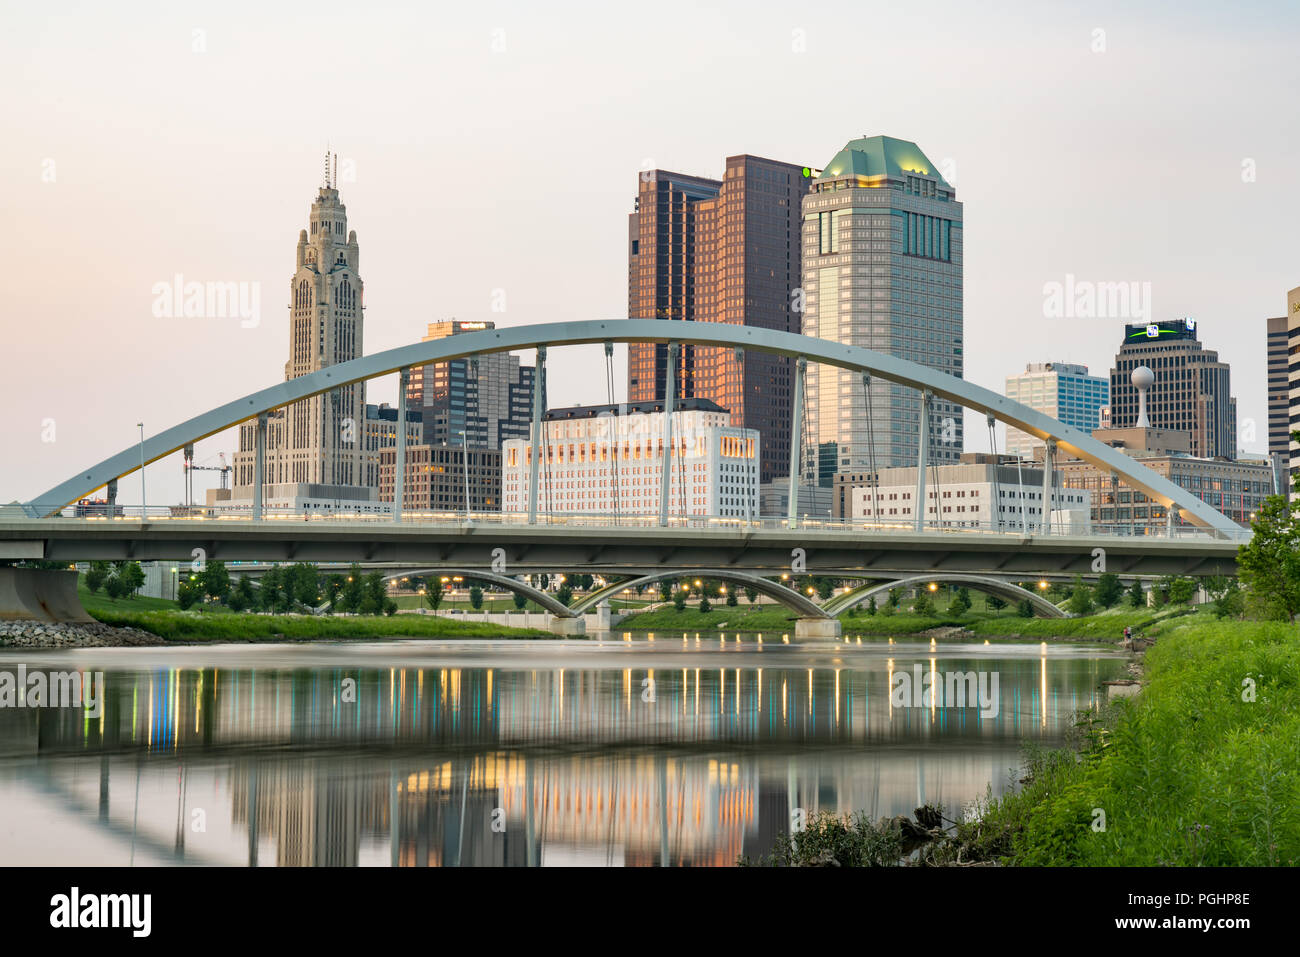 COLUMBUS, OH - 17 juin 2018 : Columbus, Ohio Ville et pont de la rue principale le long de la rivière Scioto Banque D'Images